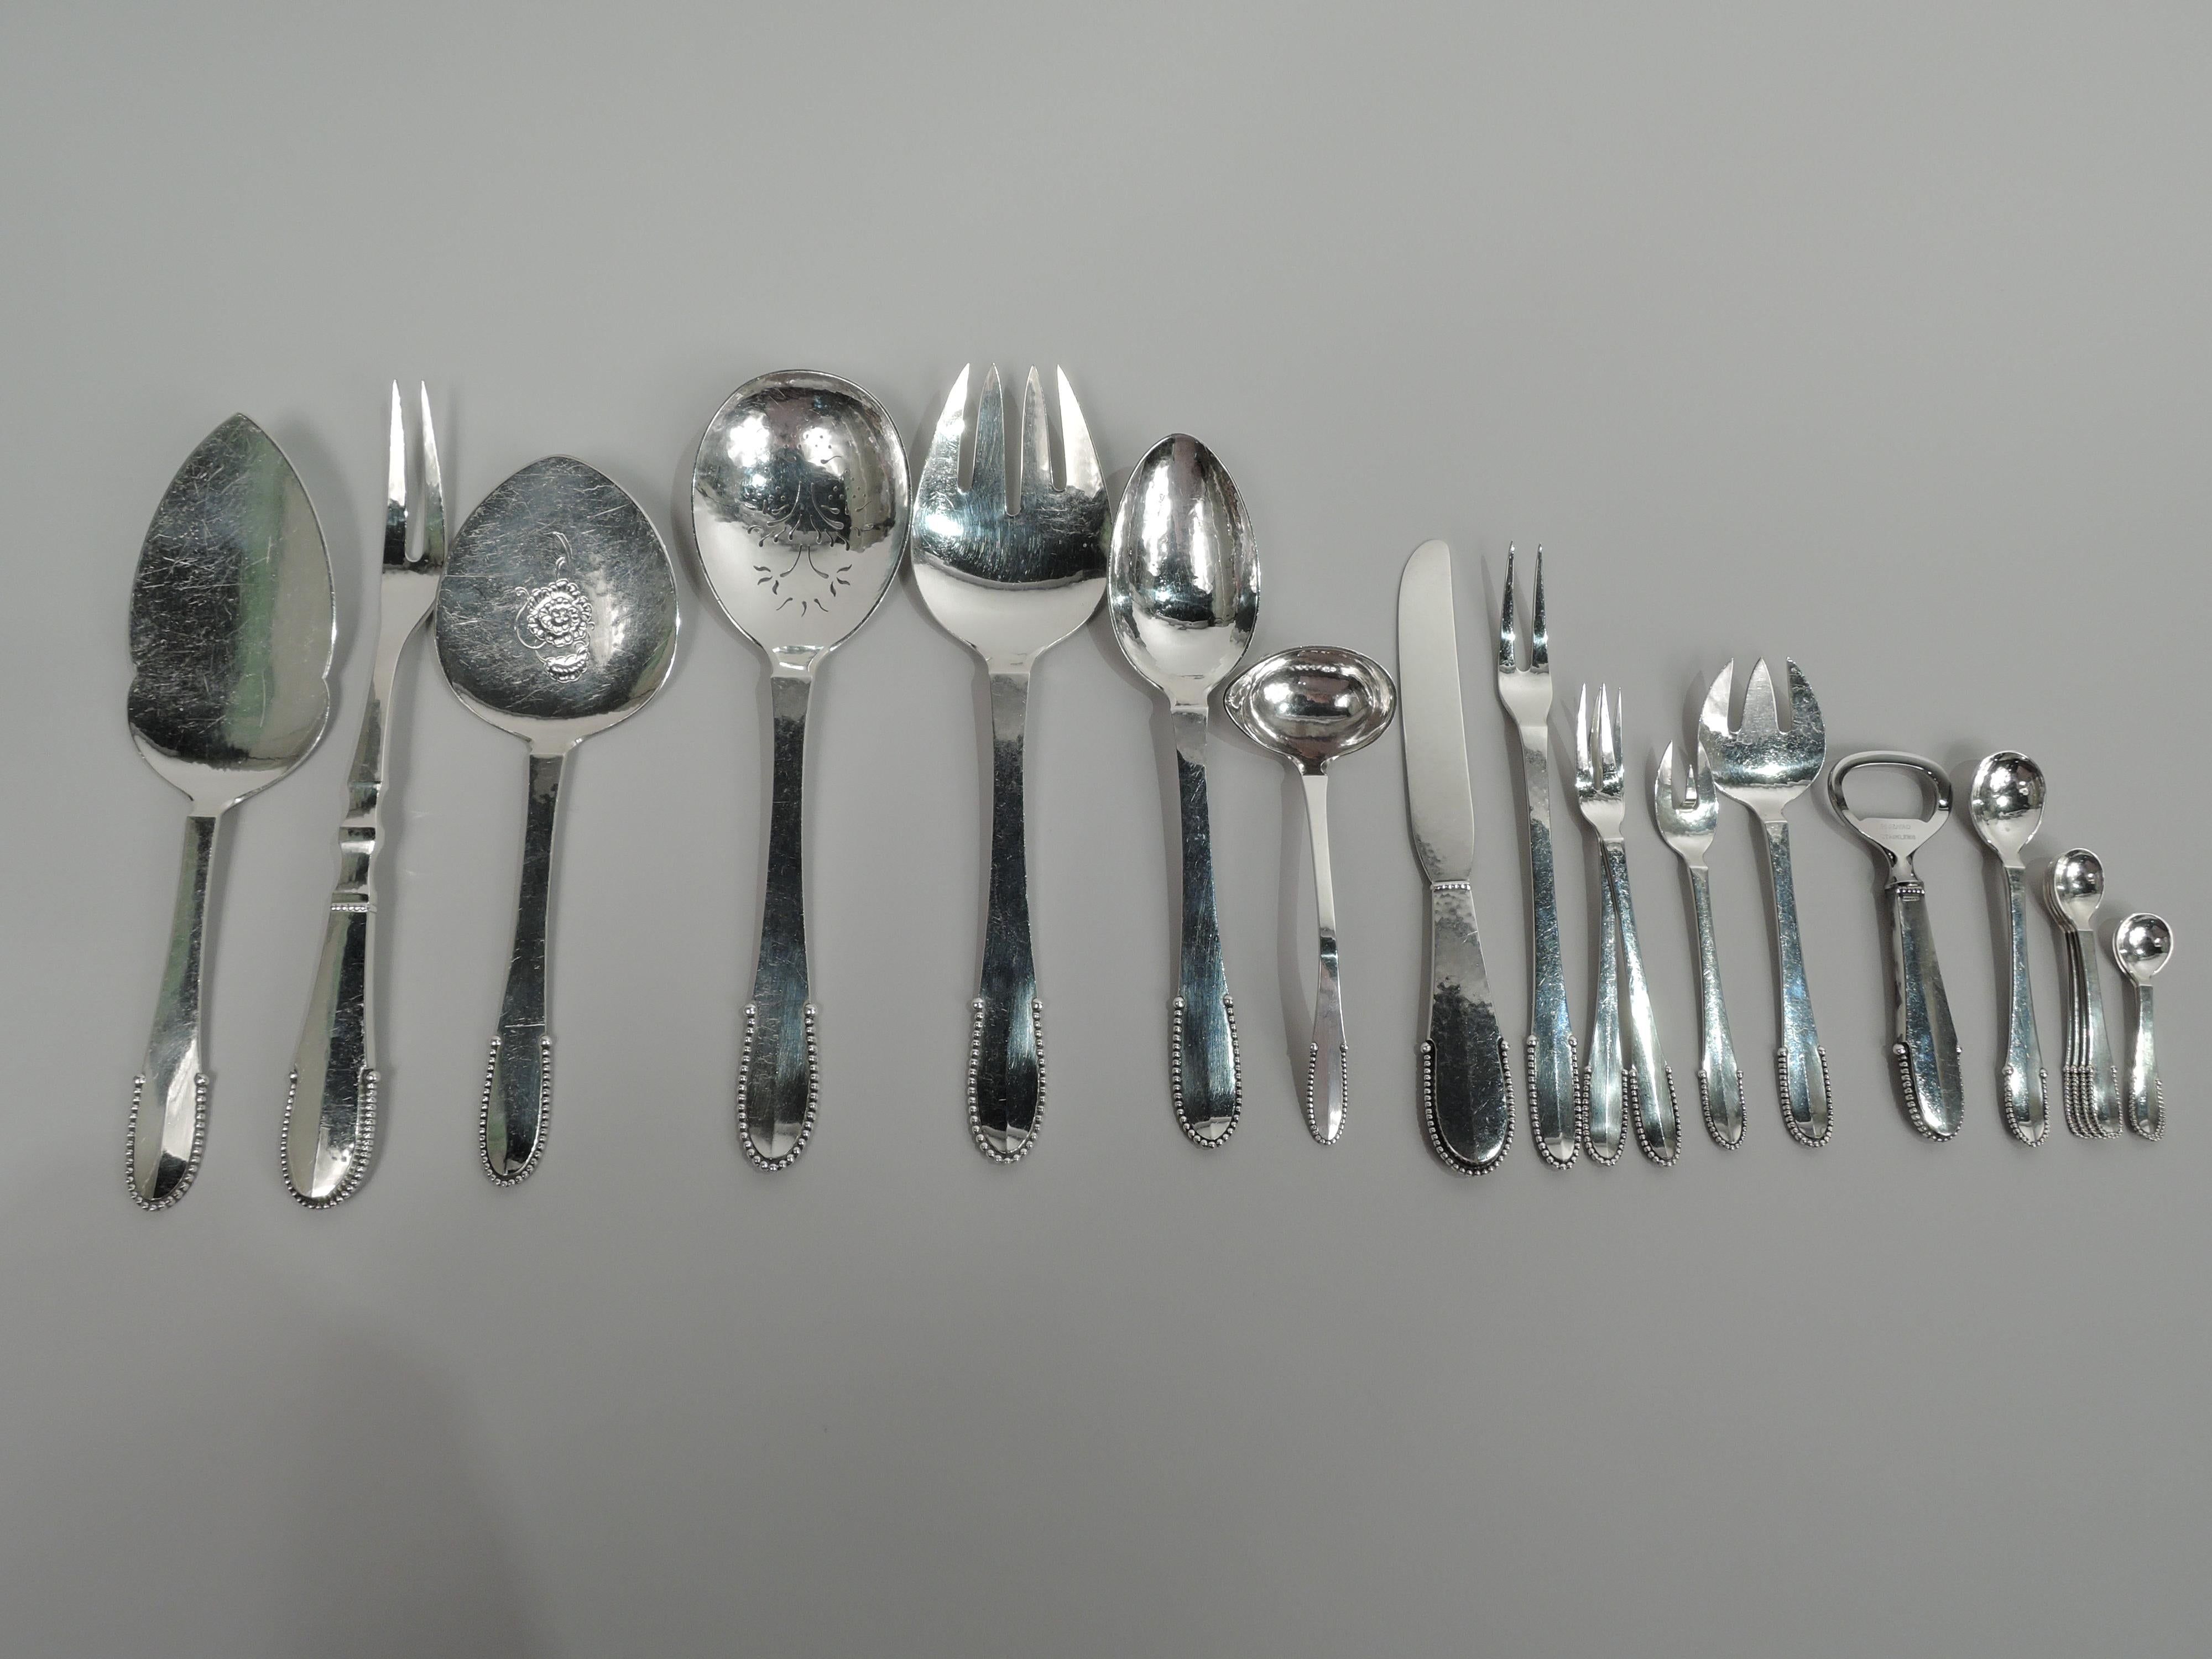 Service de table et de déjeuner en argent sterling perlé. Fabriqué par Georg Jensen à Copenhague.

Cet ensemble comprend 157 pièces (dimensions en cm) : Fourchettes : 12 fourchettes à dîner (7 1/4), 12 fourchettes à déjeuner (6 7/8), 24